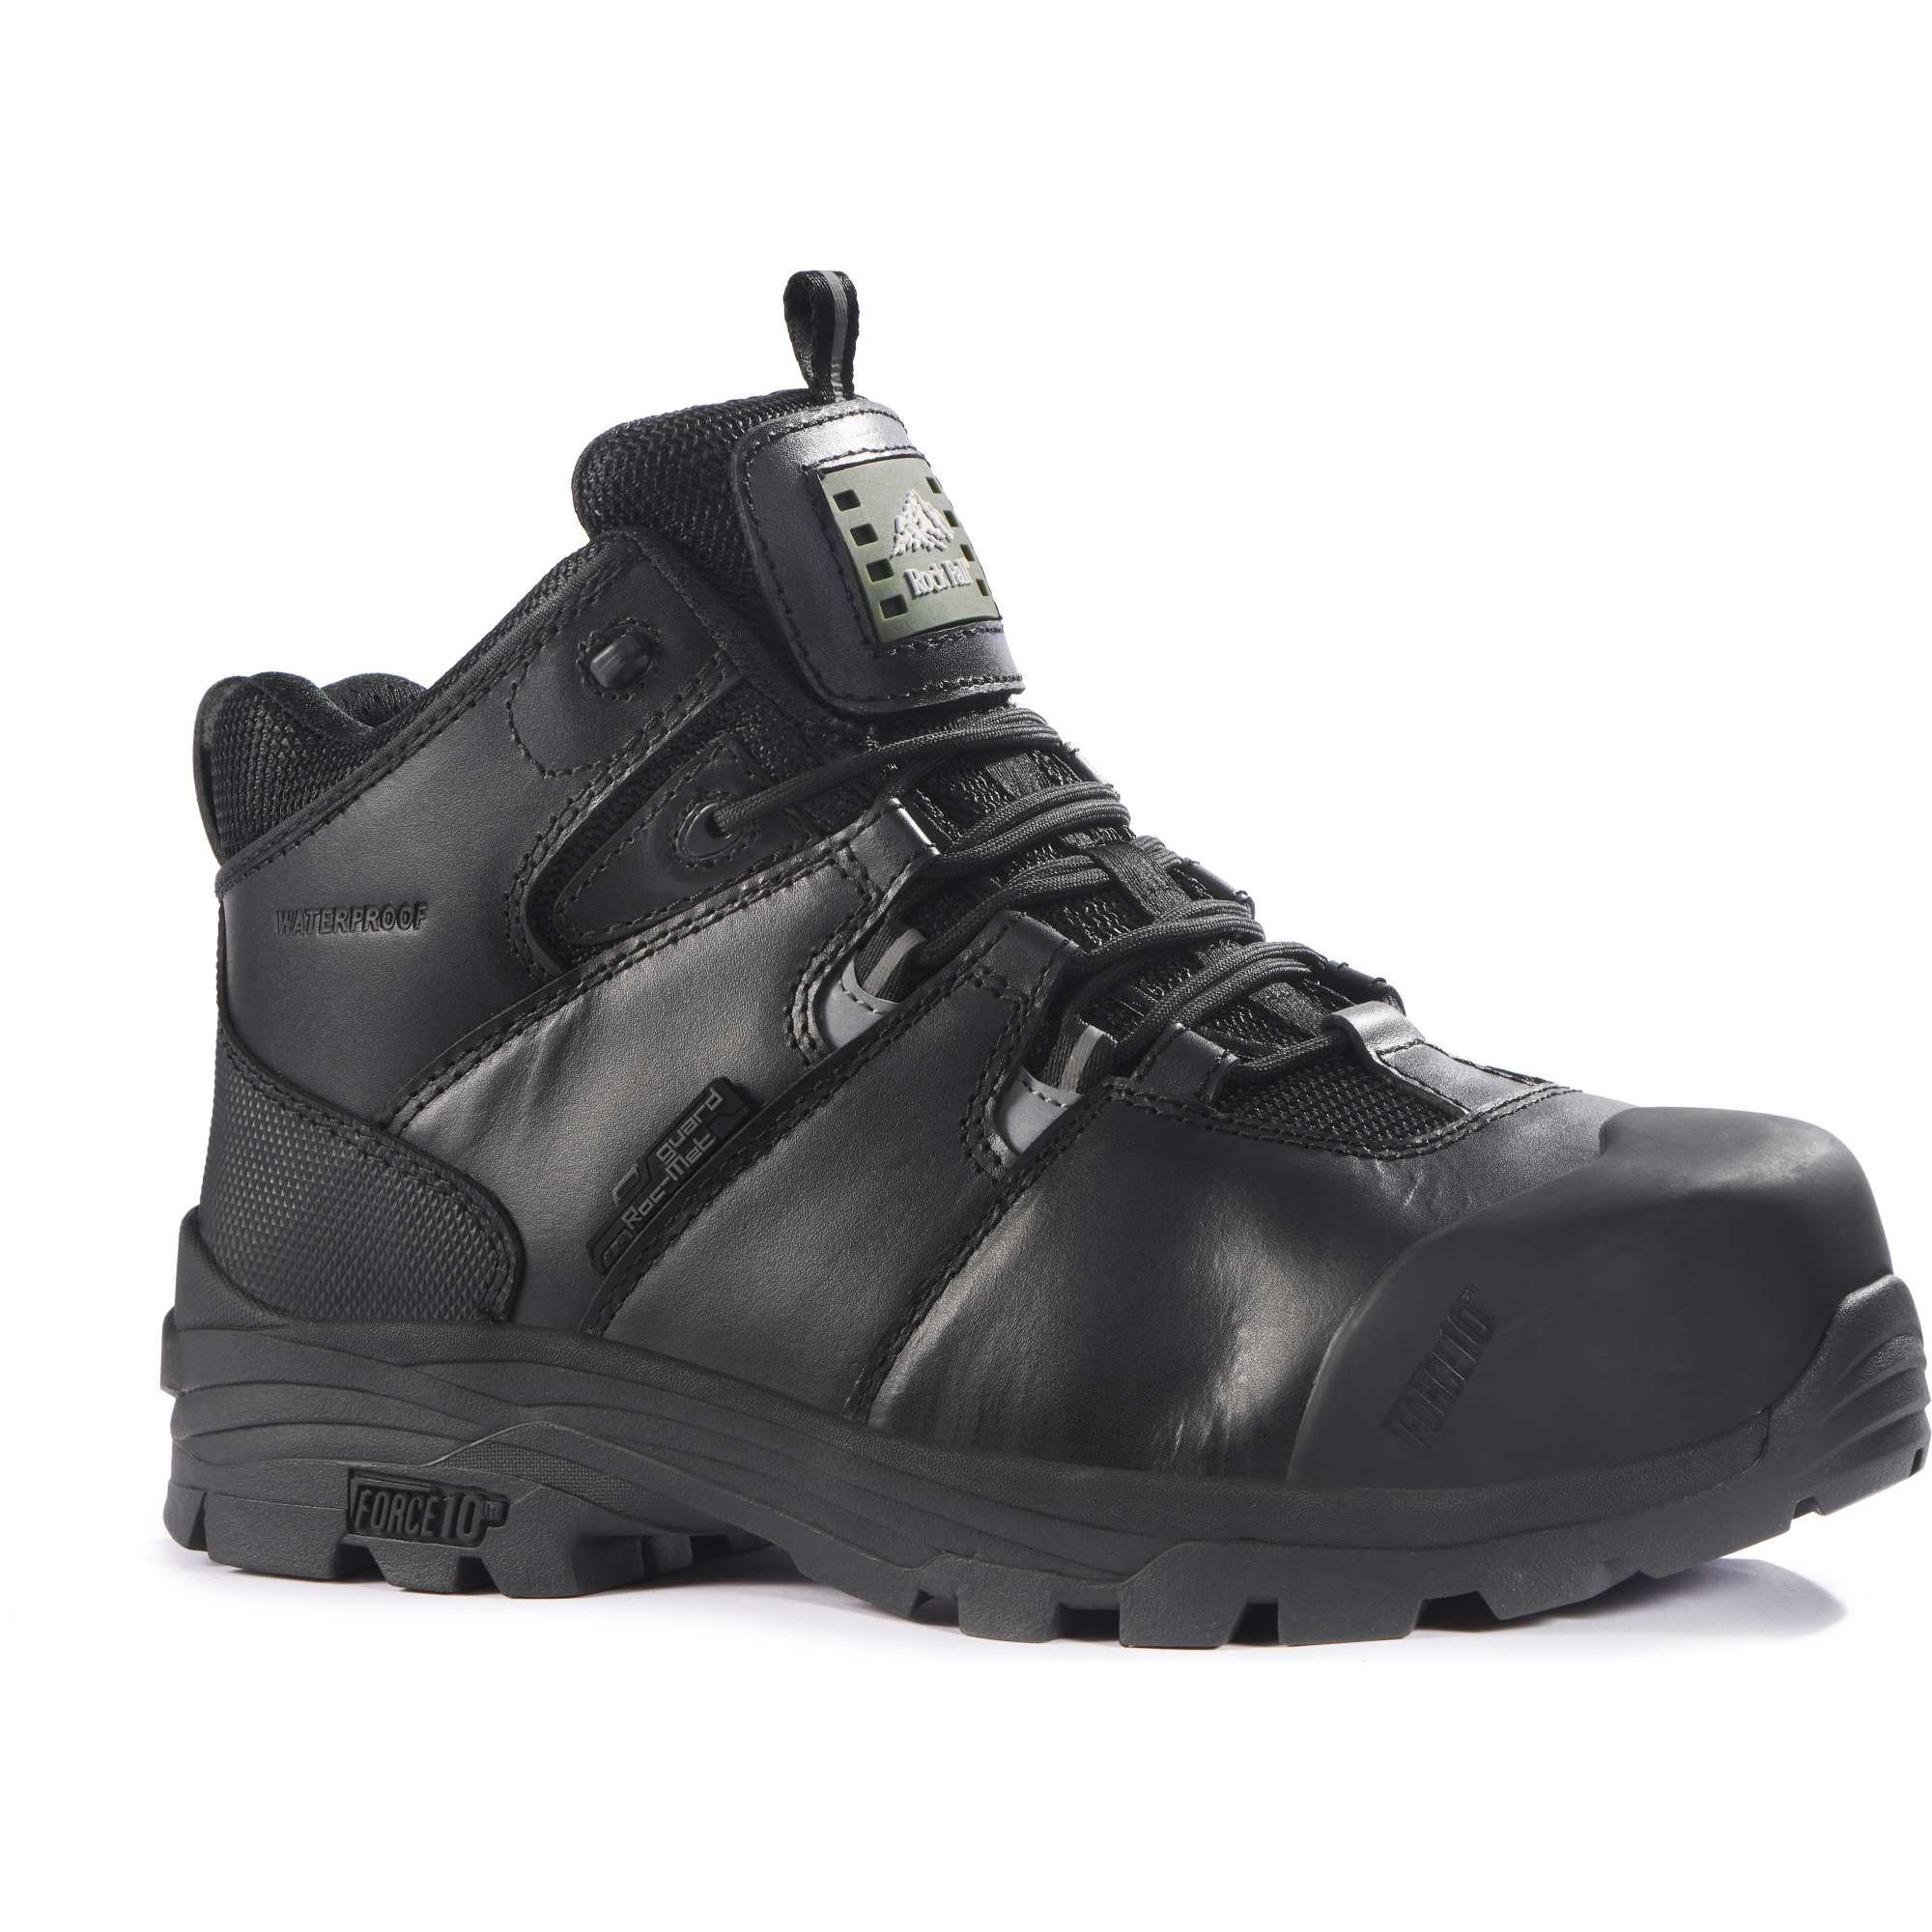 Rock Fall Rhyolite S3 Waterproof Safety Boots